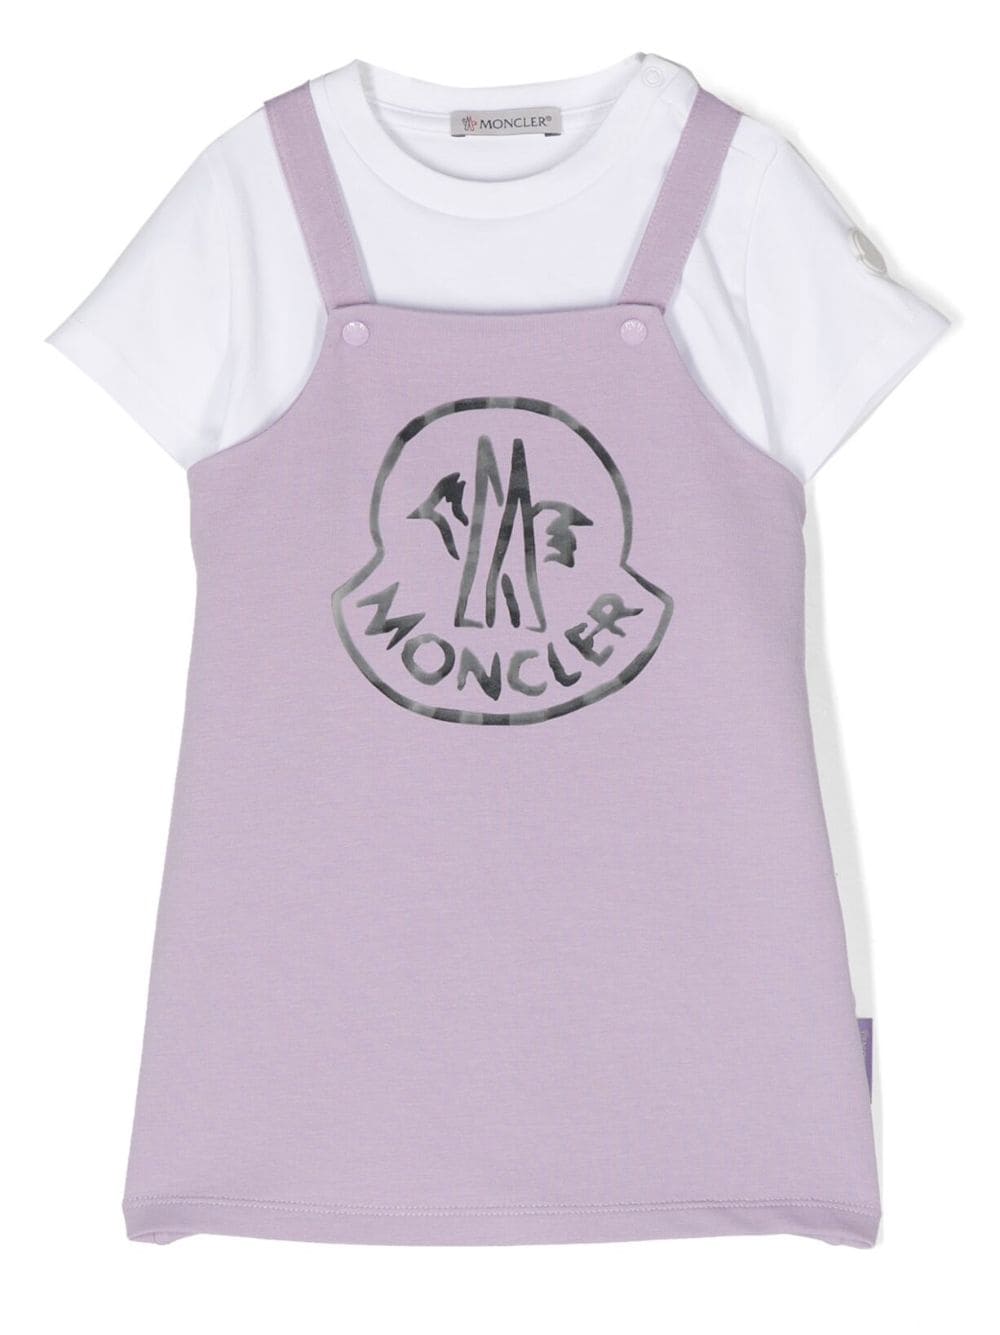 Moncler Enfant cotton T-shirt romper set - Purple von Moncler Enfant